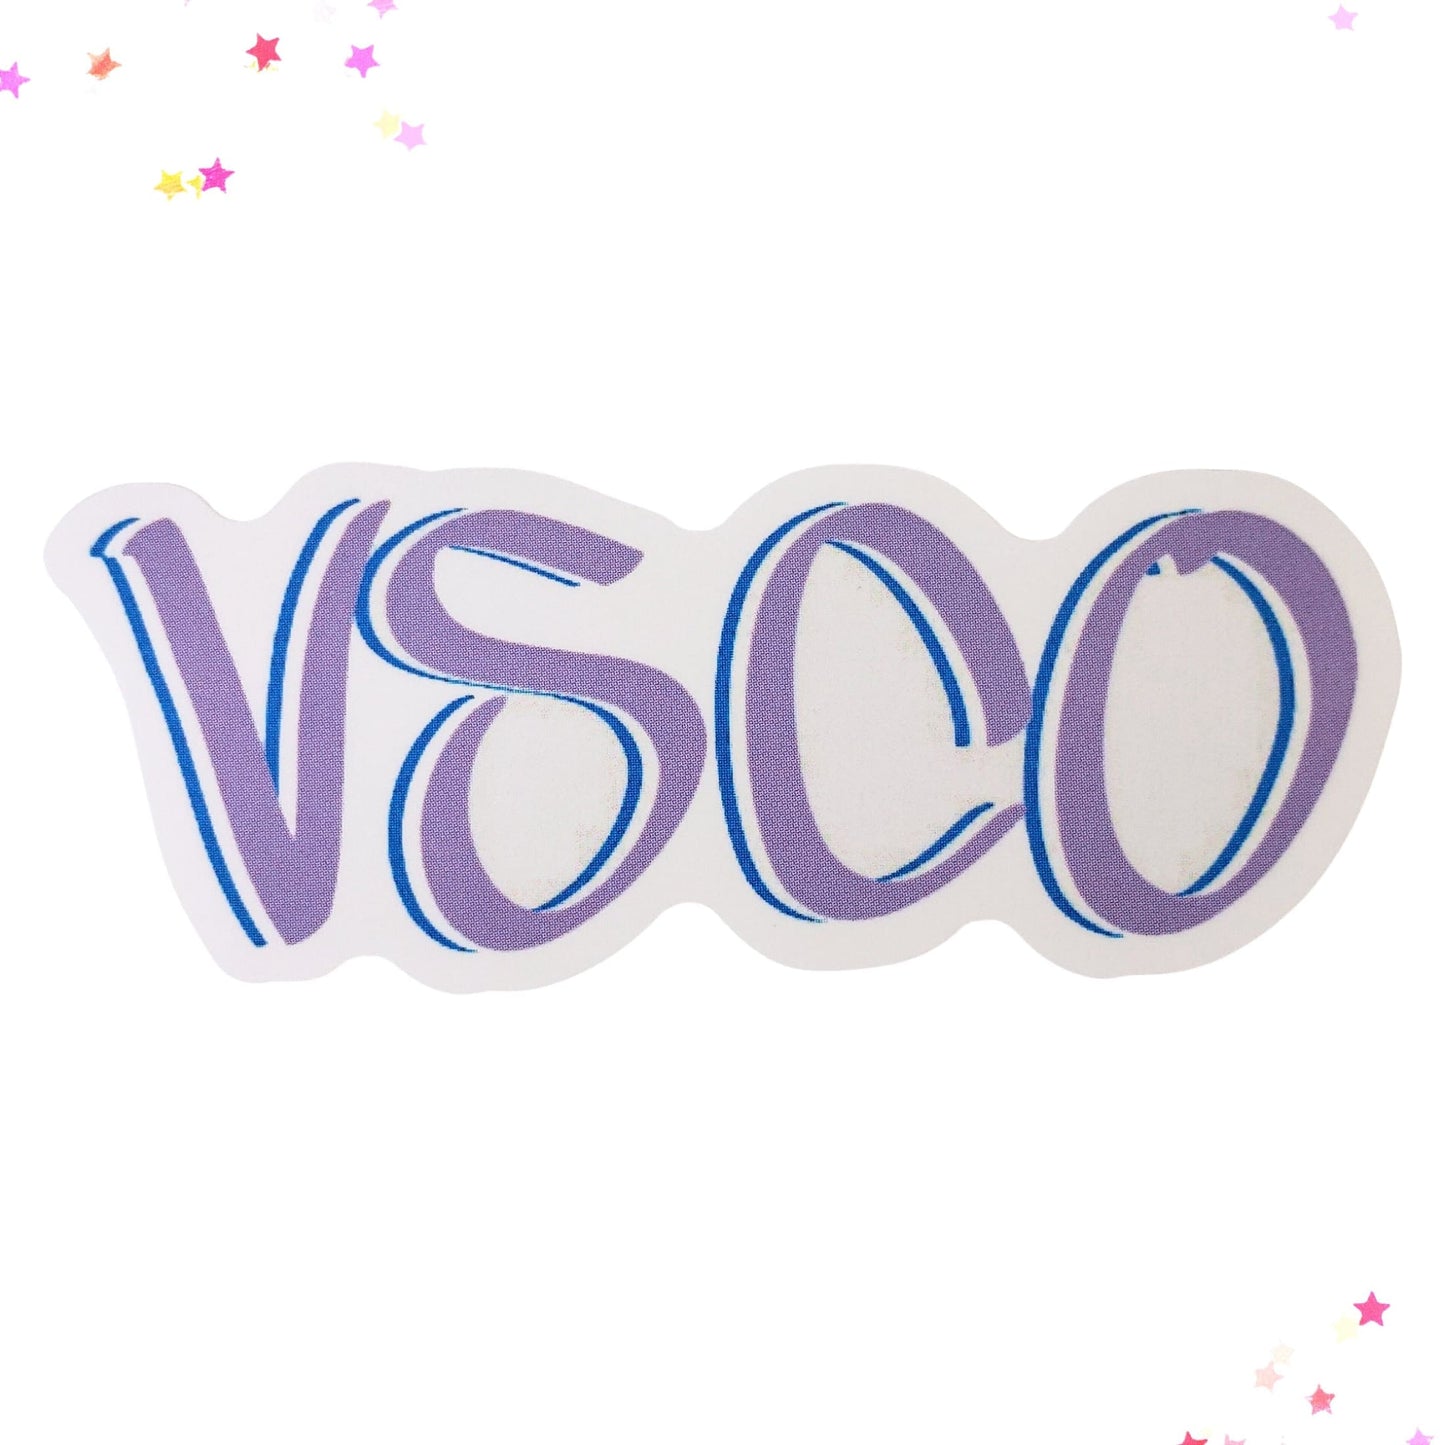 VSCO Waterproof Sticker from Confetti Kitty, Only 1.00